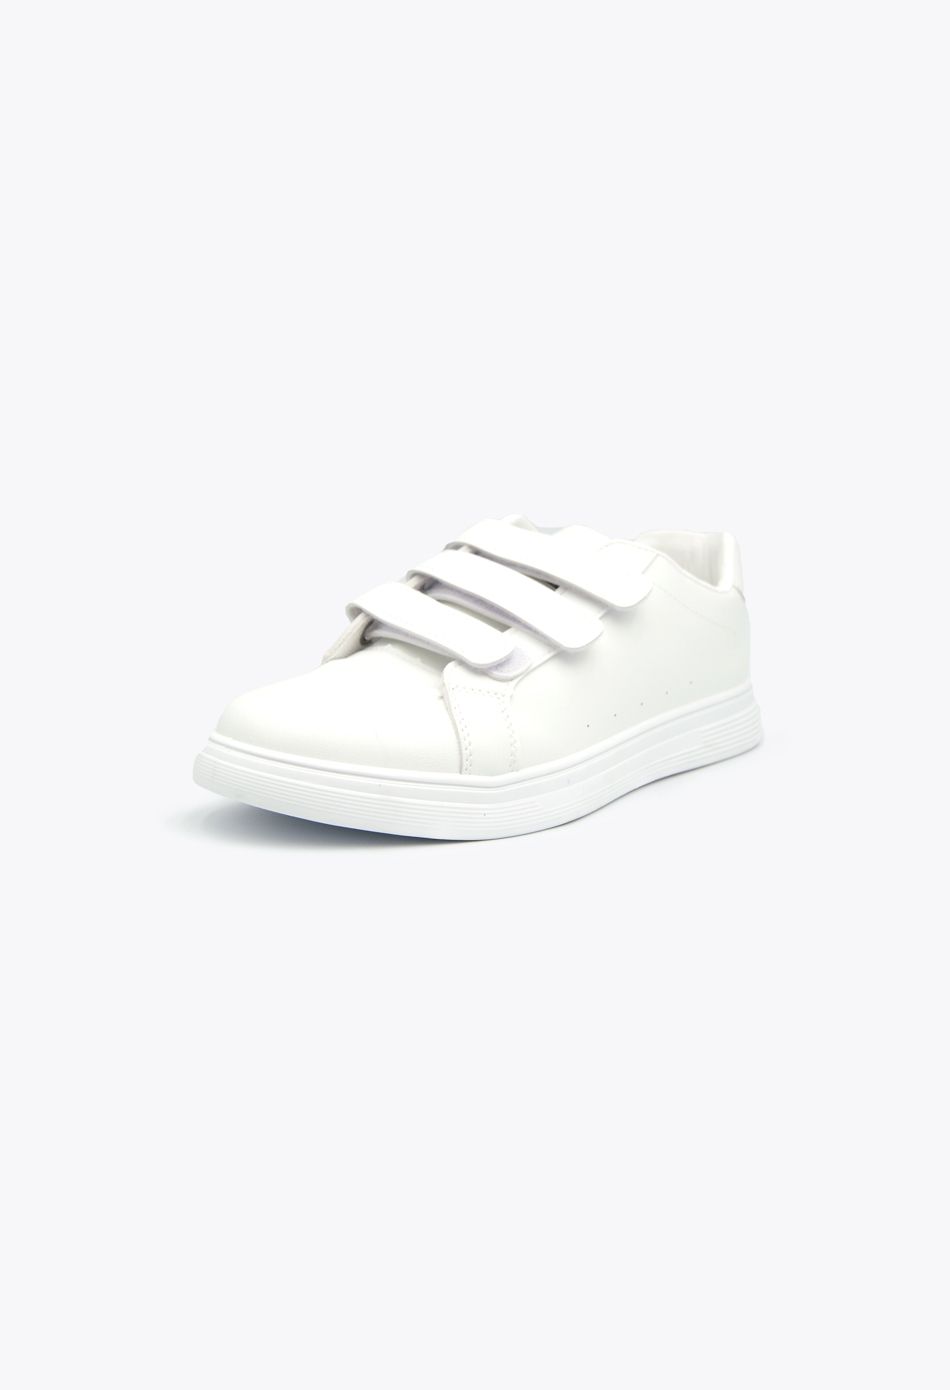 Ανδρικά Casual Sneakers με Scratch Λευκό / A62-white ΑΘΛΗΤΙΚΑ & SNEAKERS joya.gr